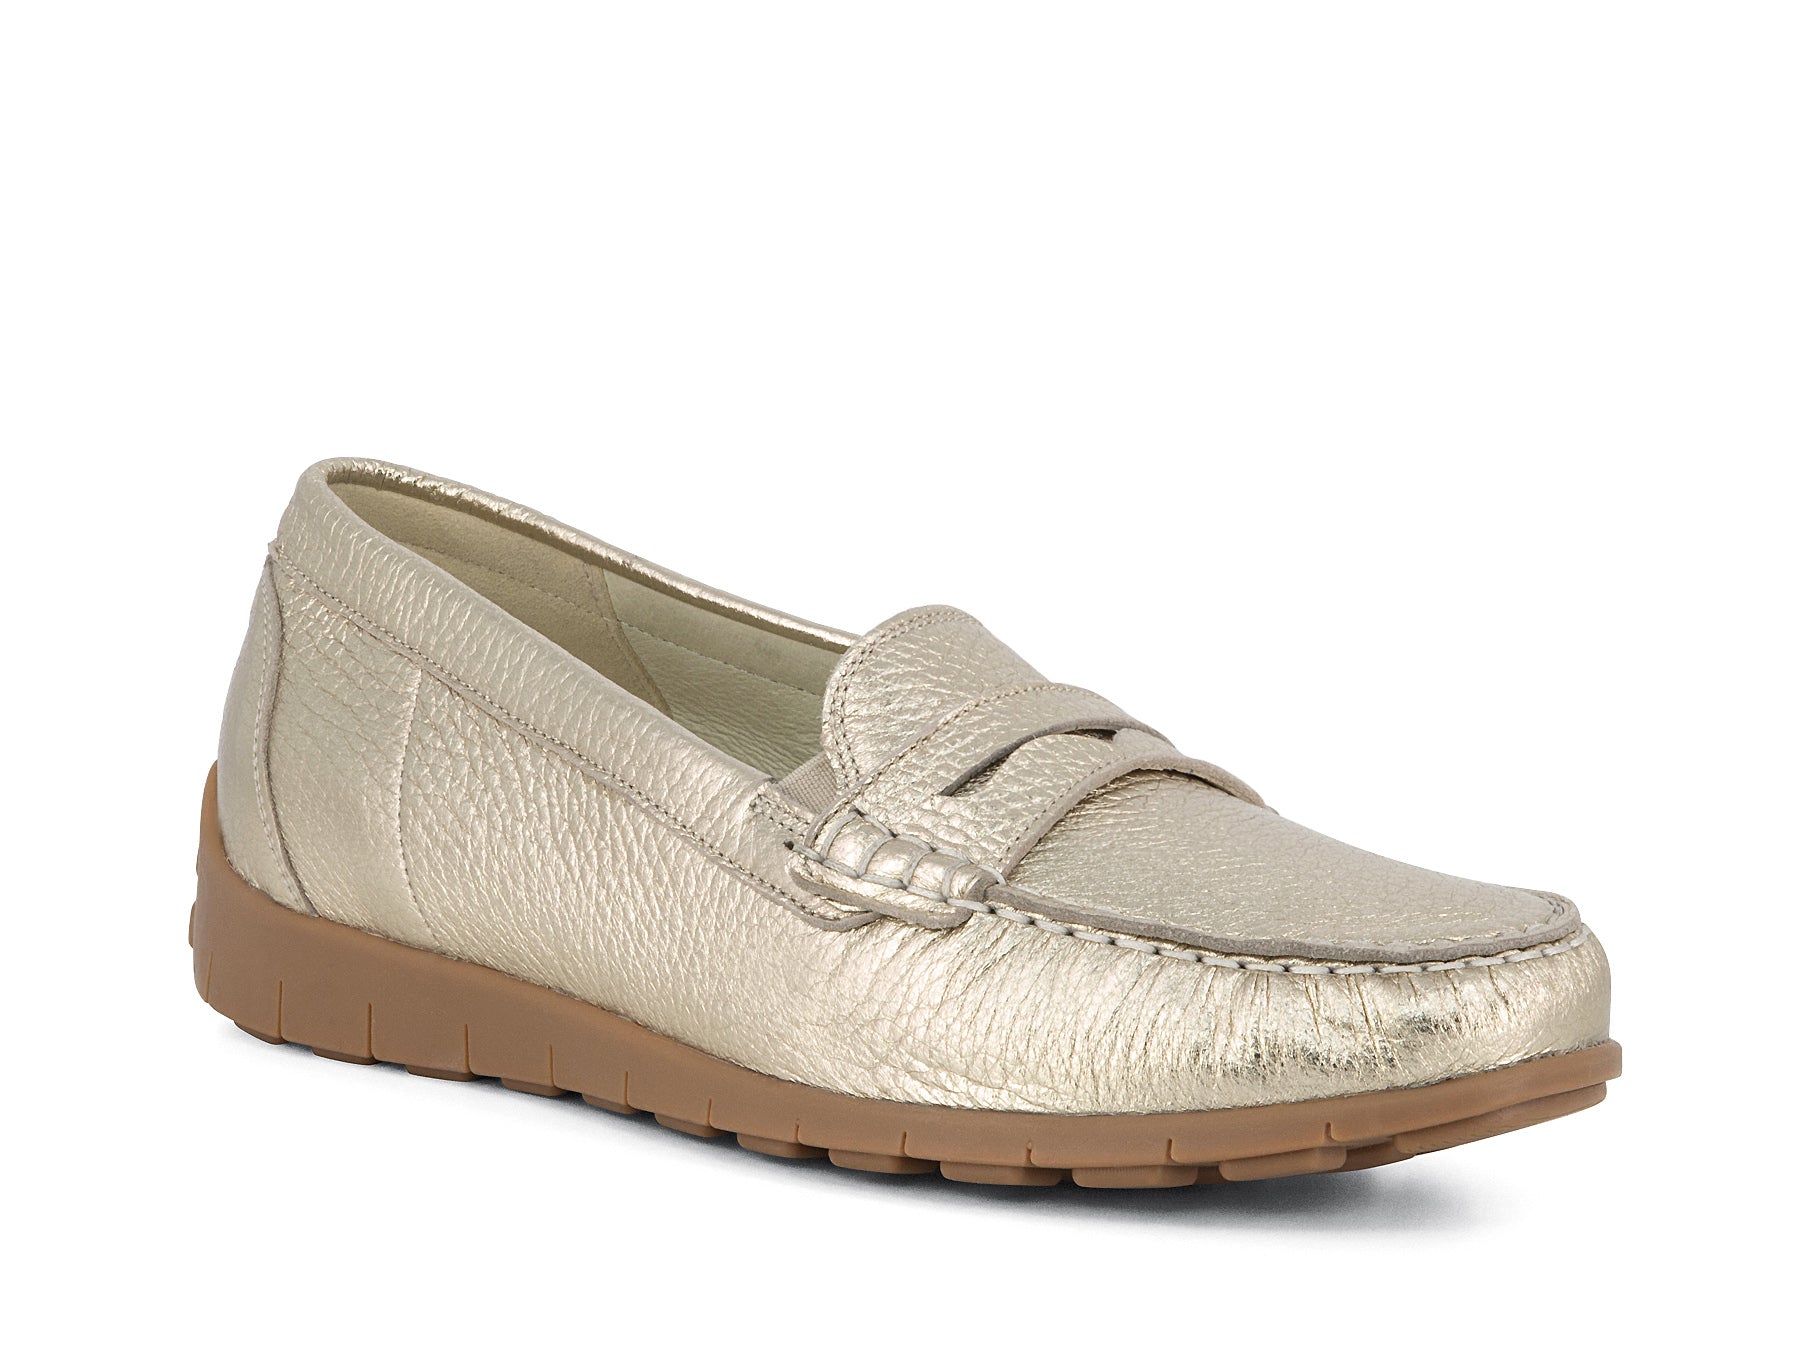 WANNABE SOFT GOLD | Peter Sheppard Footwear